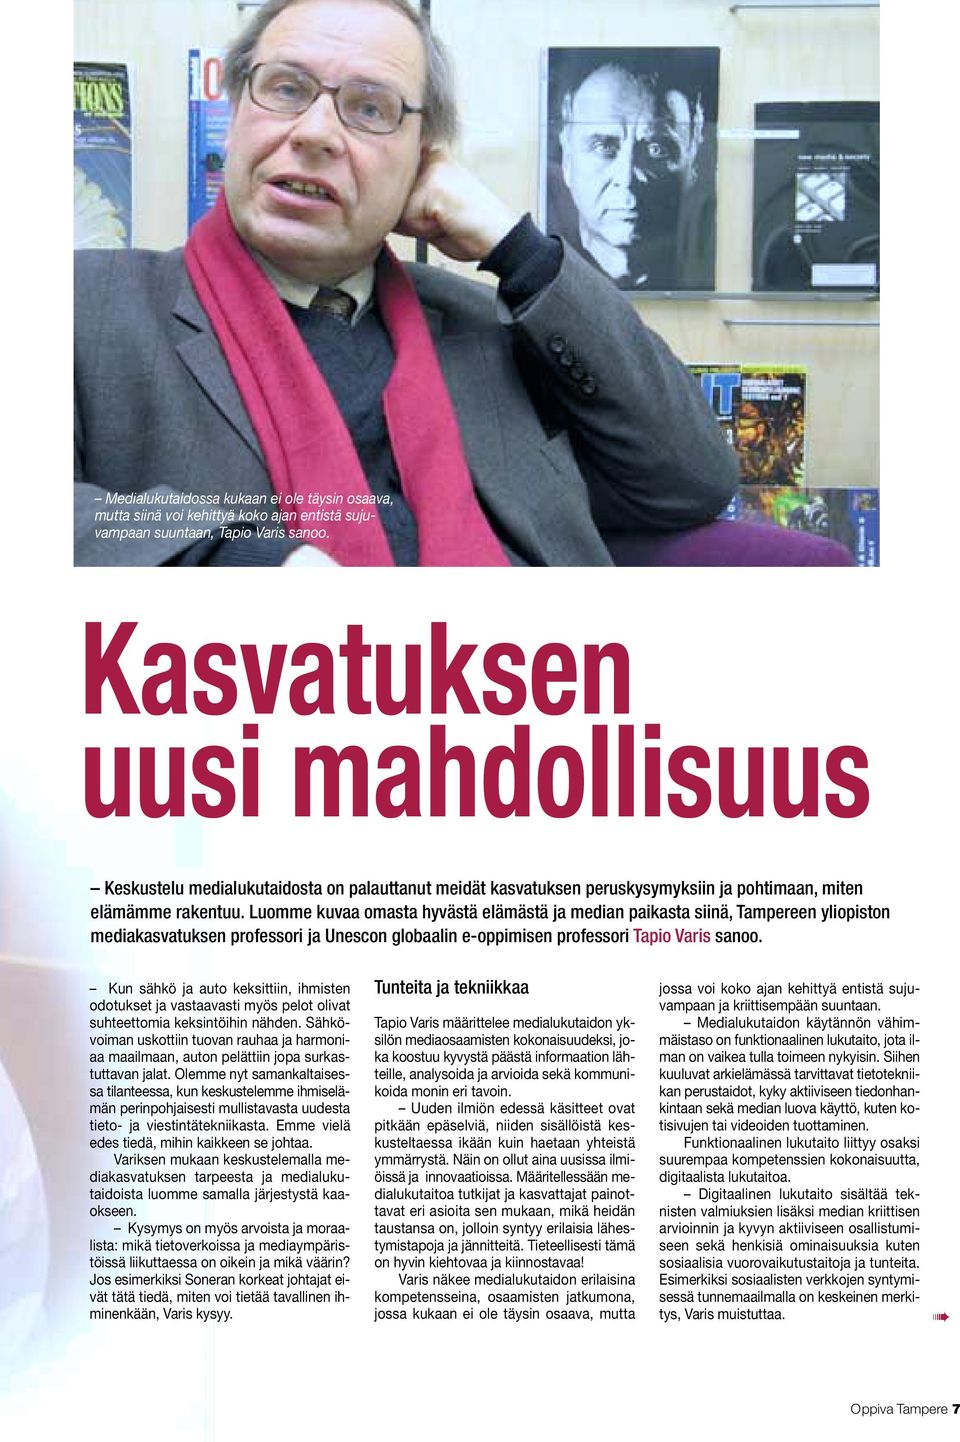 Luomme kuvaa omasta hyvästä elämästä ja median paikasta siinä, Tampereen yliopiston mediakasvatuksen professori ja Unescon globaalin e-oppimisen professori Tapio Varis sanoo.